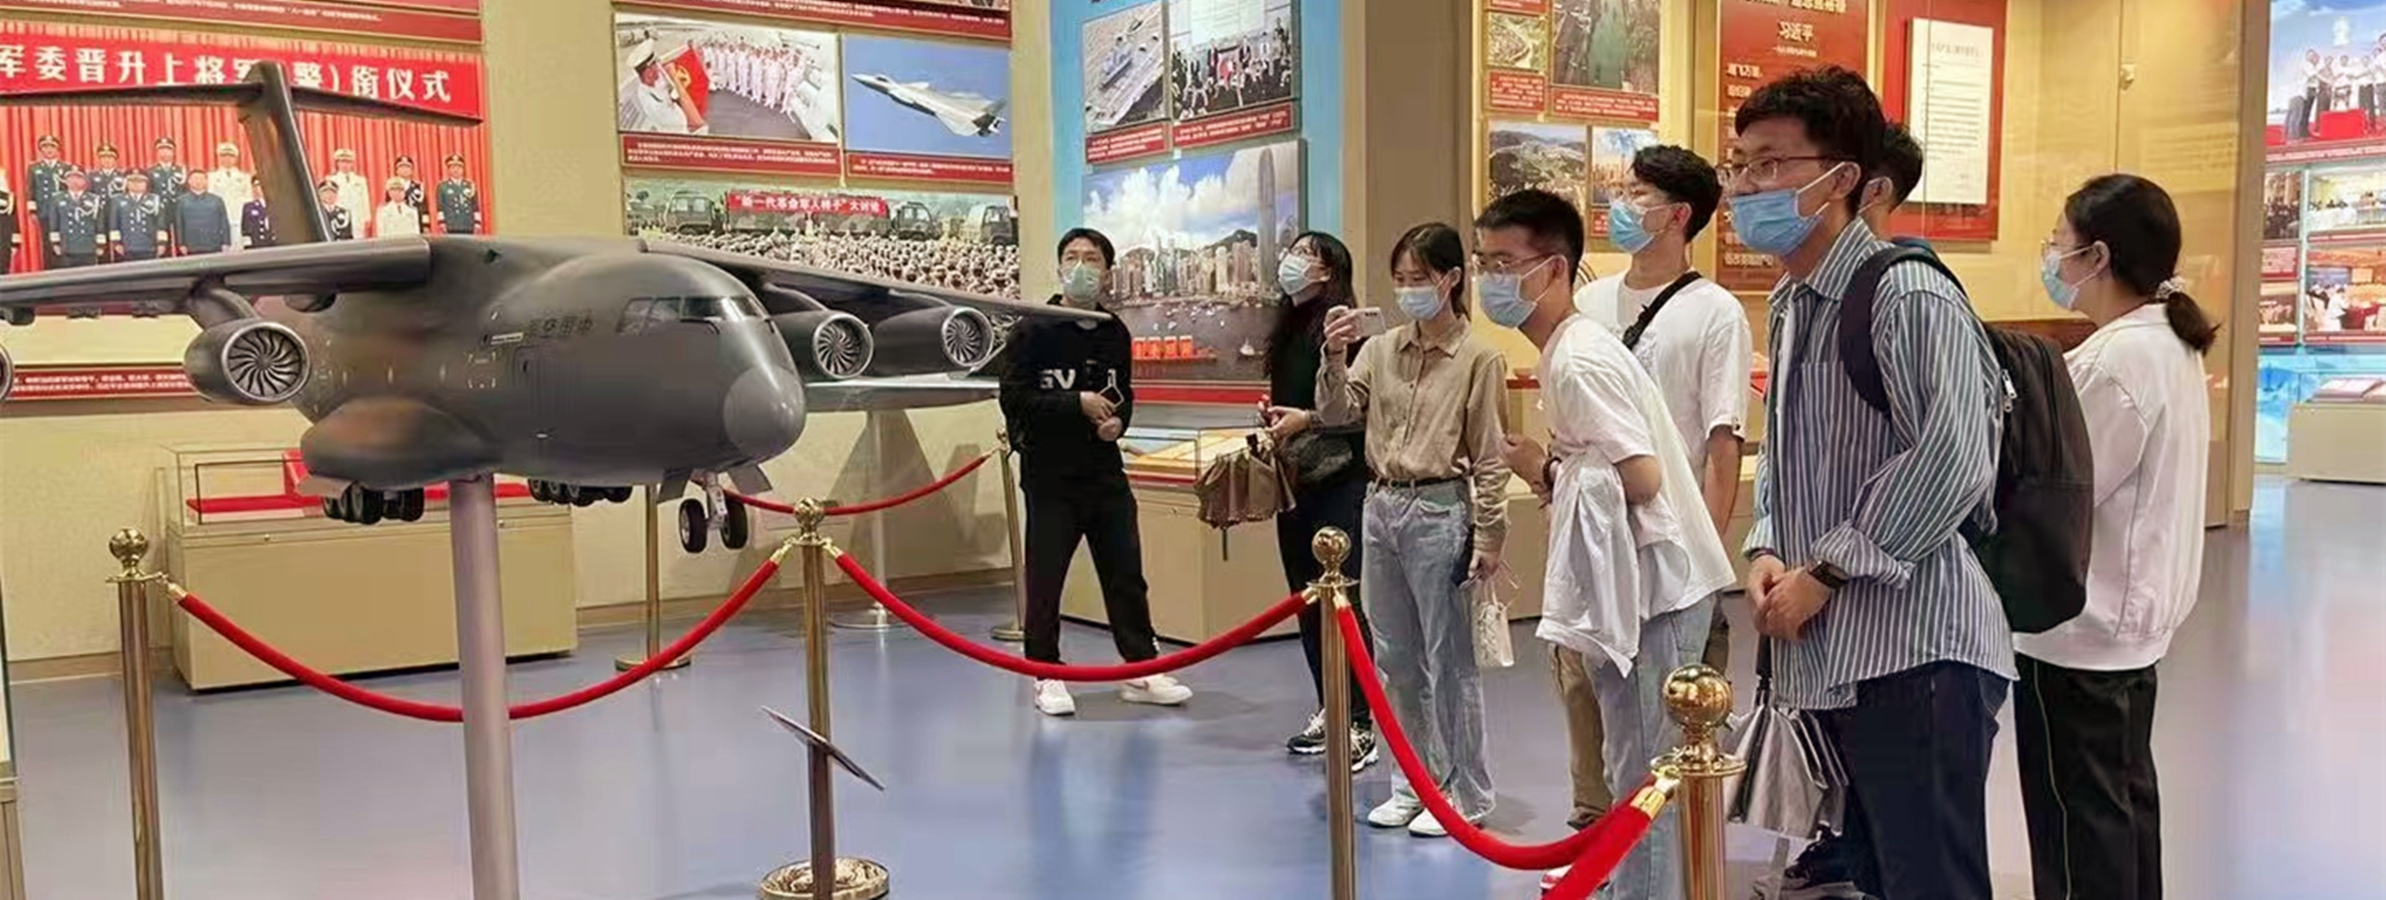 新生党员代表参观中国共产党历史展览馆